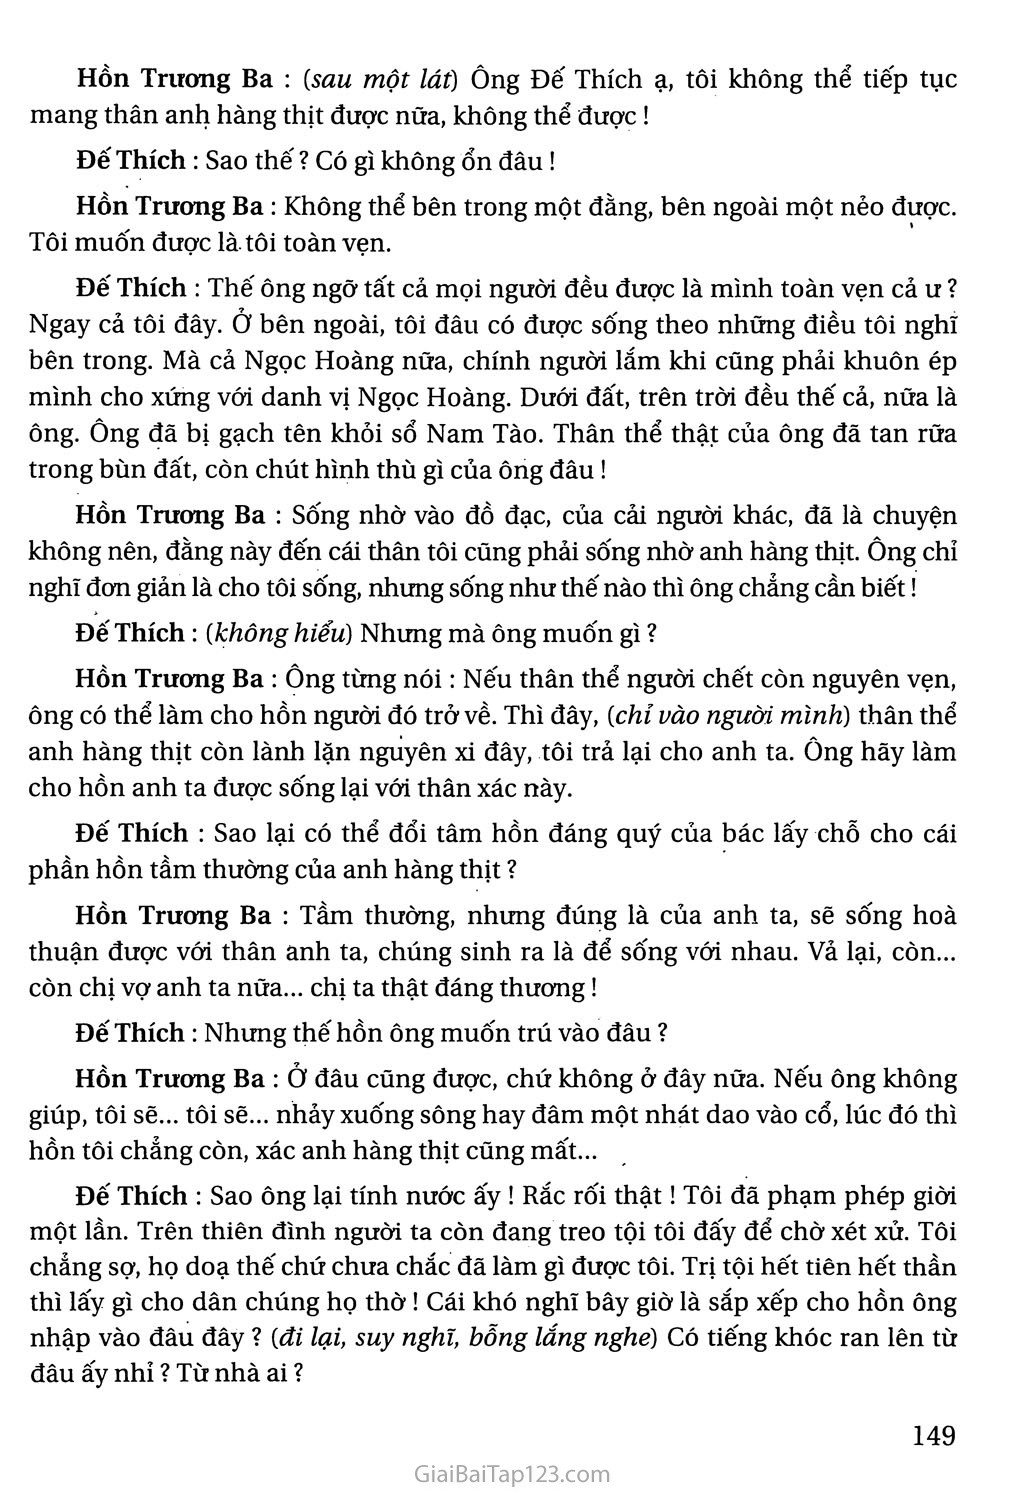 Hồn Trương Ba, da hàng thịt (trích) trang 8